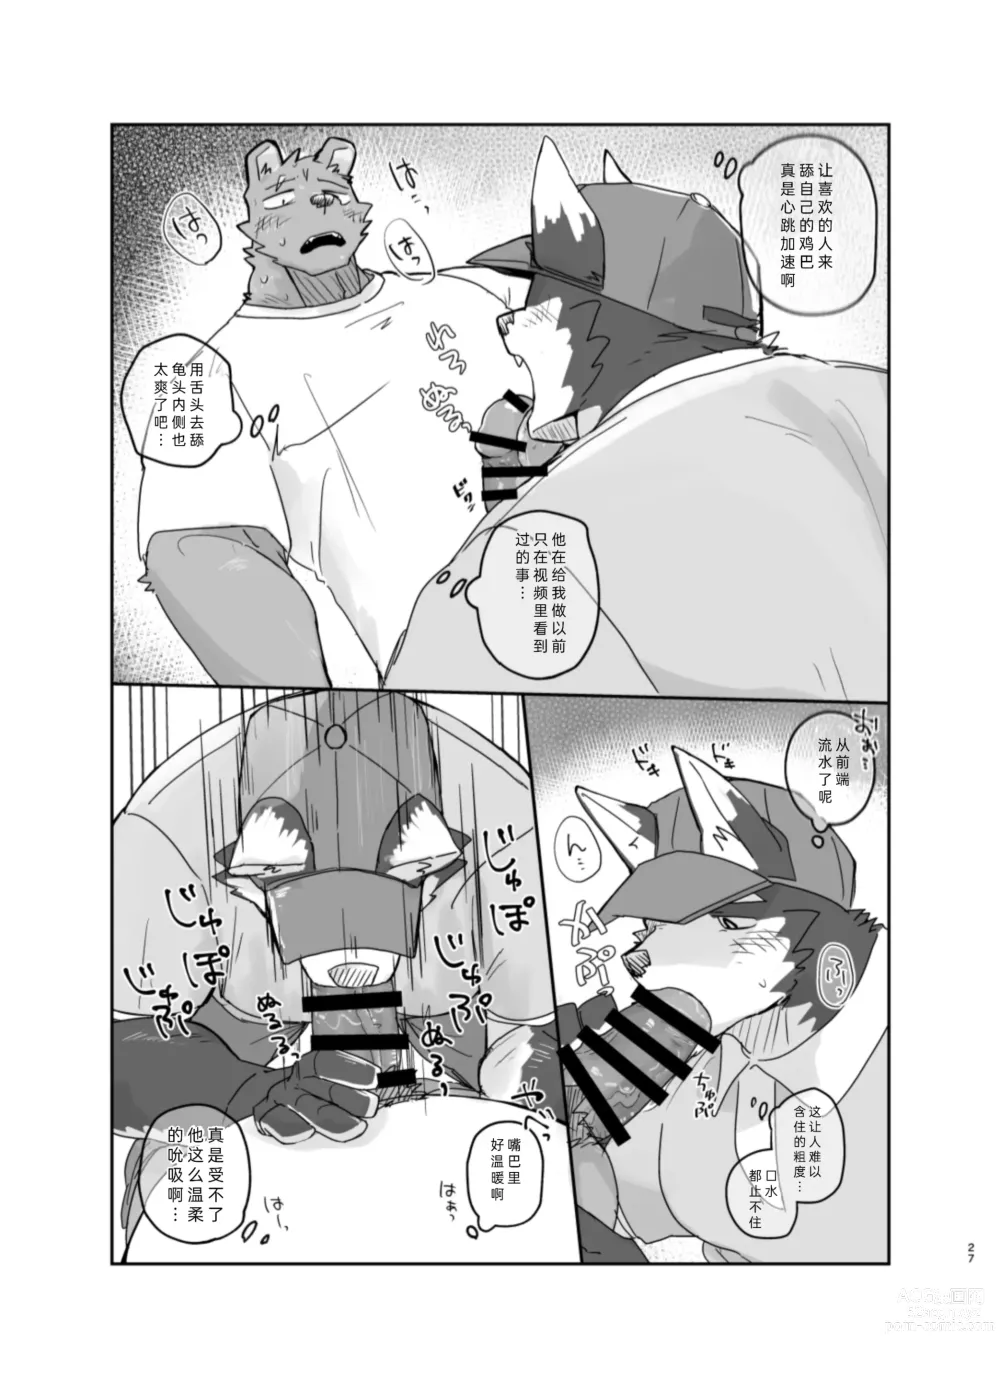 Page 27 of doujinshi 搬家的十分钟服务